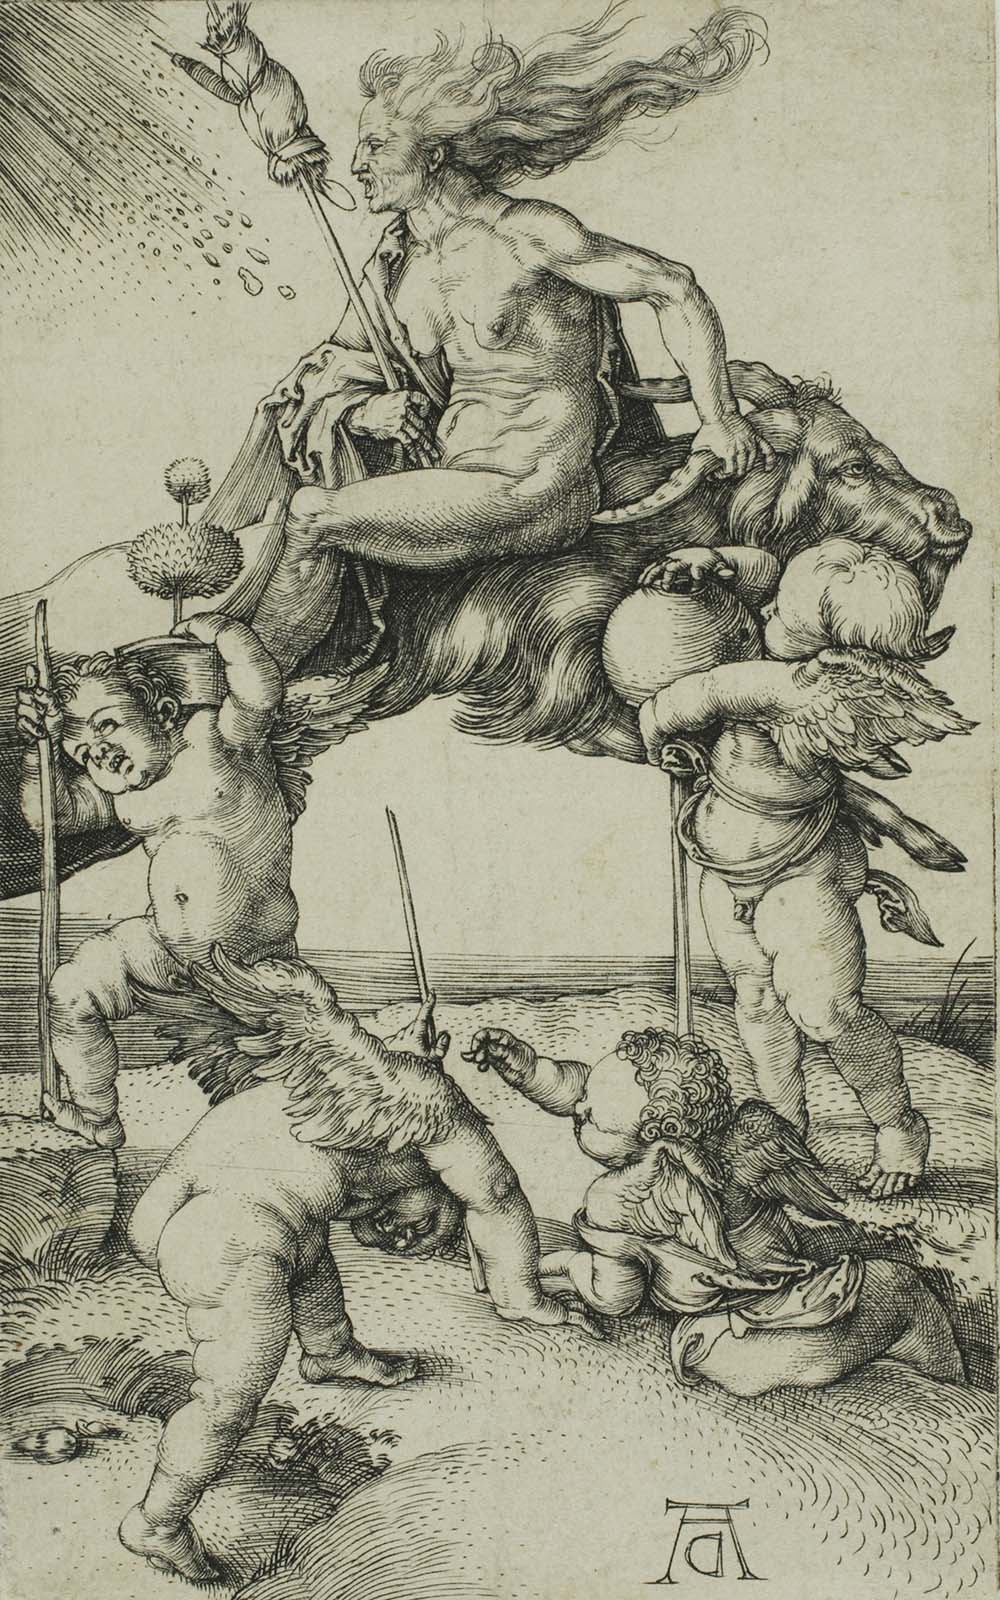 Witch Riding Backwards on a Goat, by Albrecht Dürer, c. 1500.